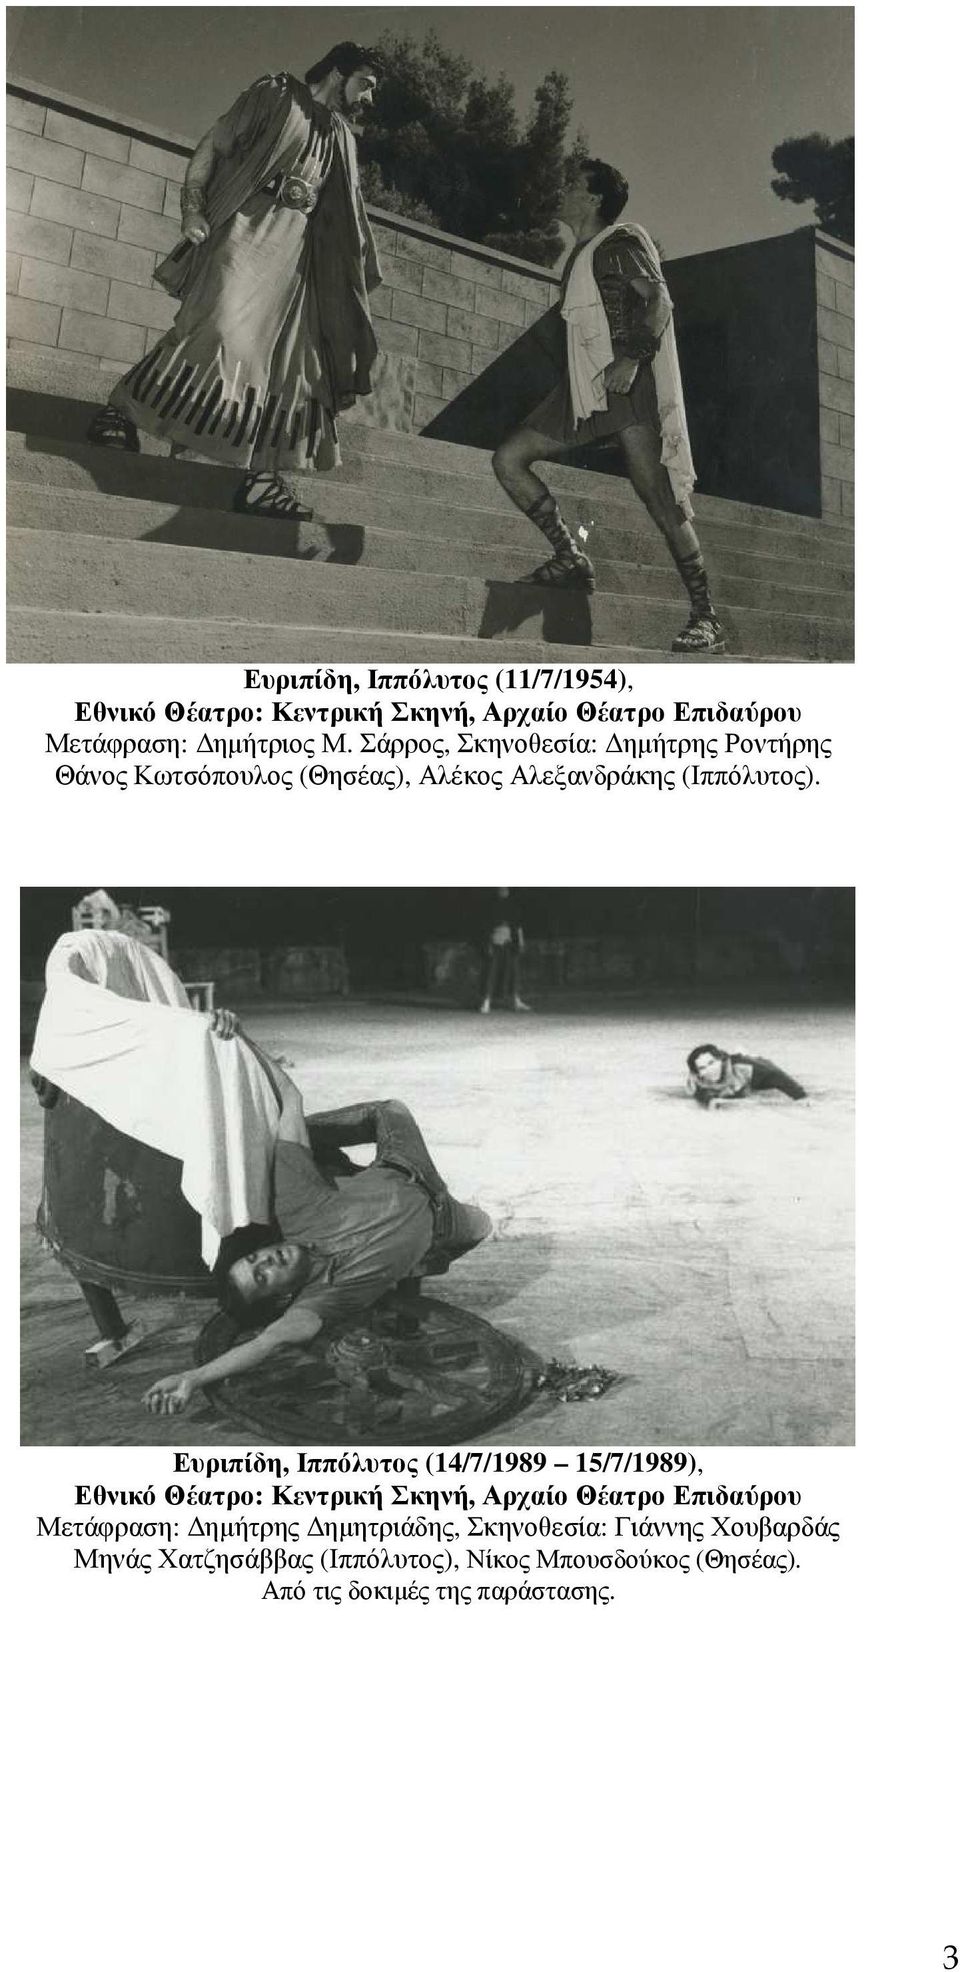 Ευριπίδη, Ιππόλυτος (14/7/1989 15/7/1989), Εθνικό Θέατρο: Κεντρική Σκηνή, Αρχαίο Θέατρο Επιδαύρου Μετάφραση: